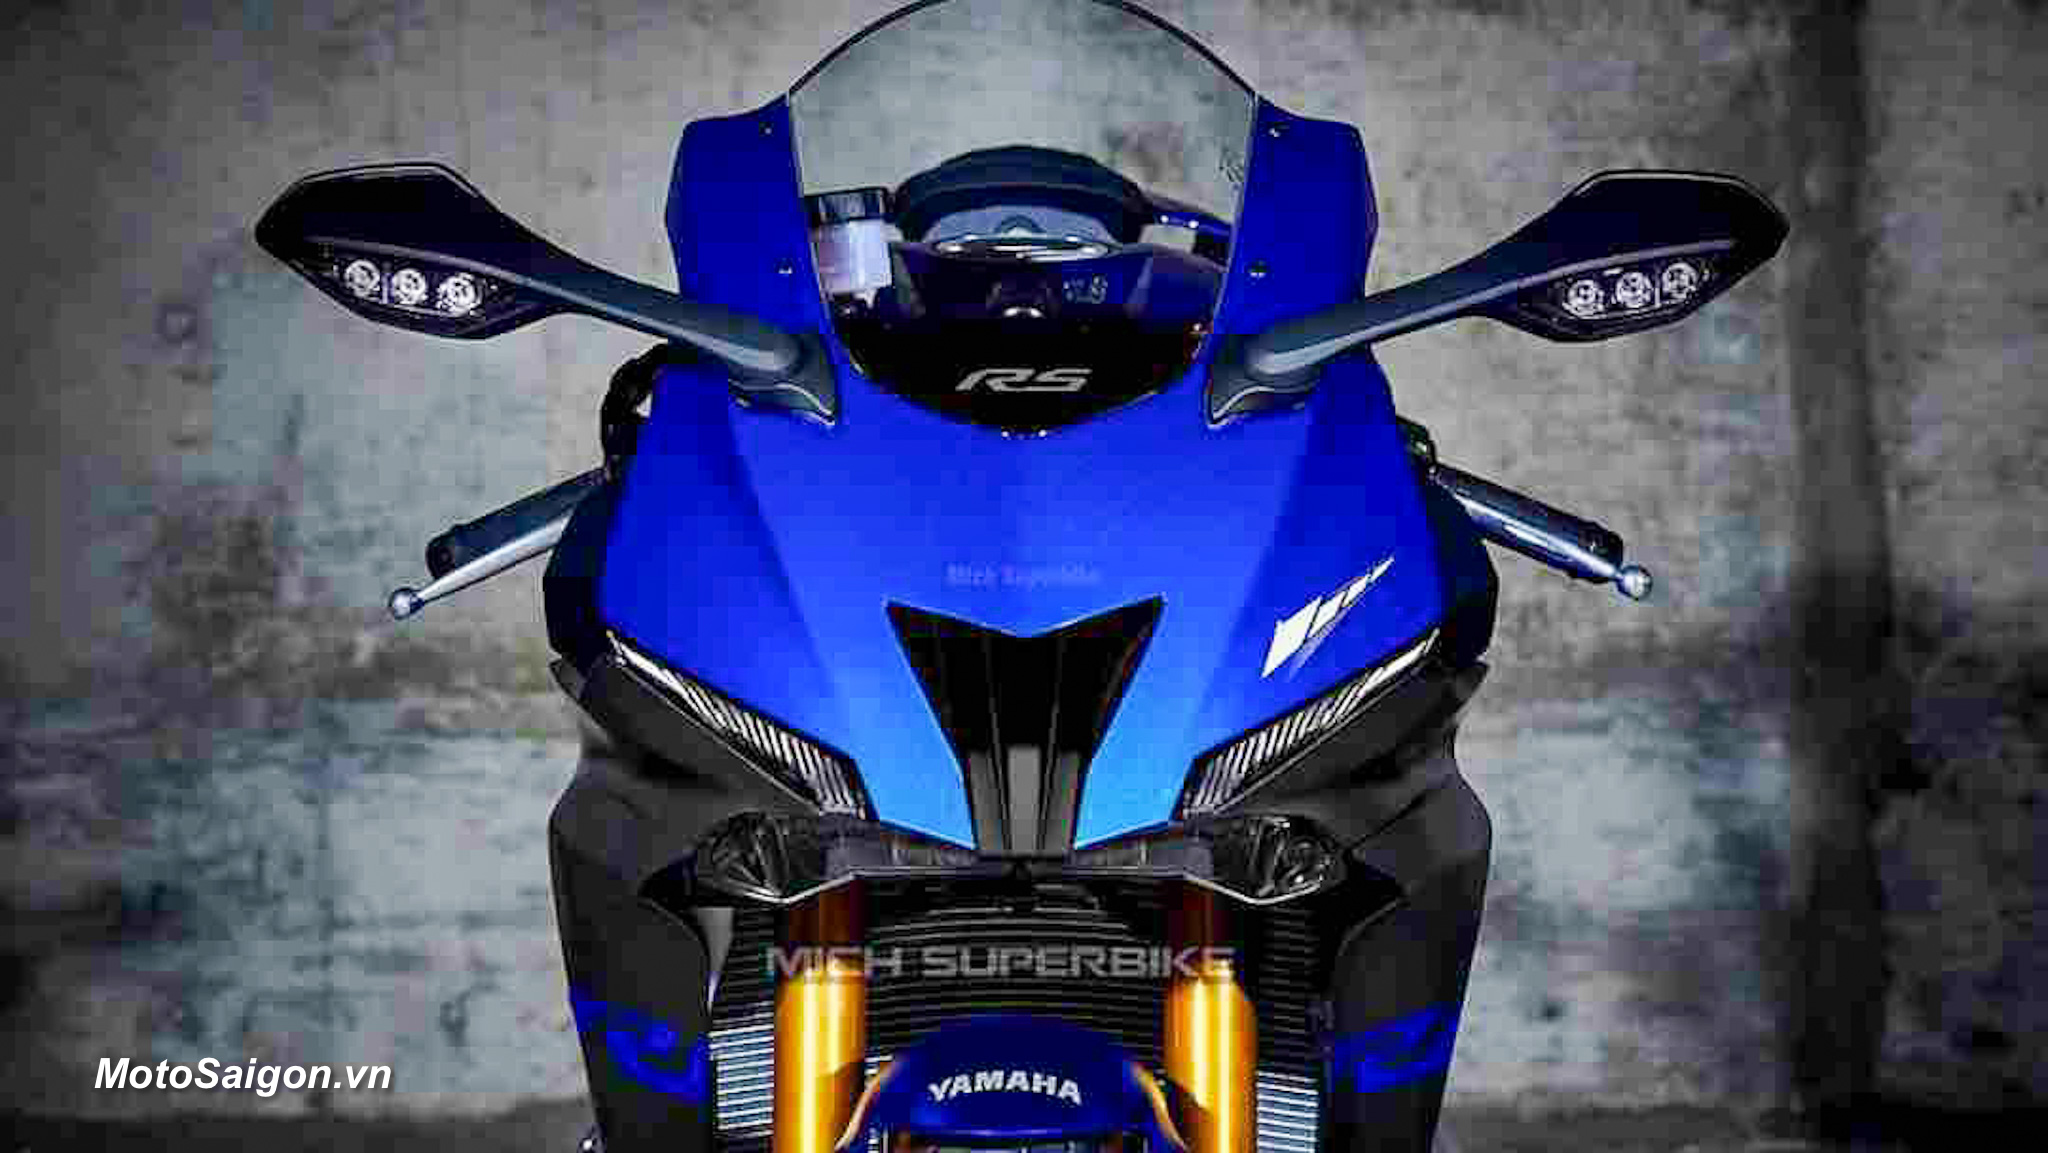 Yamaha R5 đang được phát triển để đấu với CBR500R vs Ninja 500